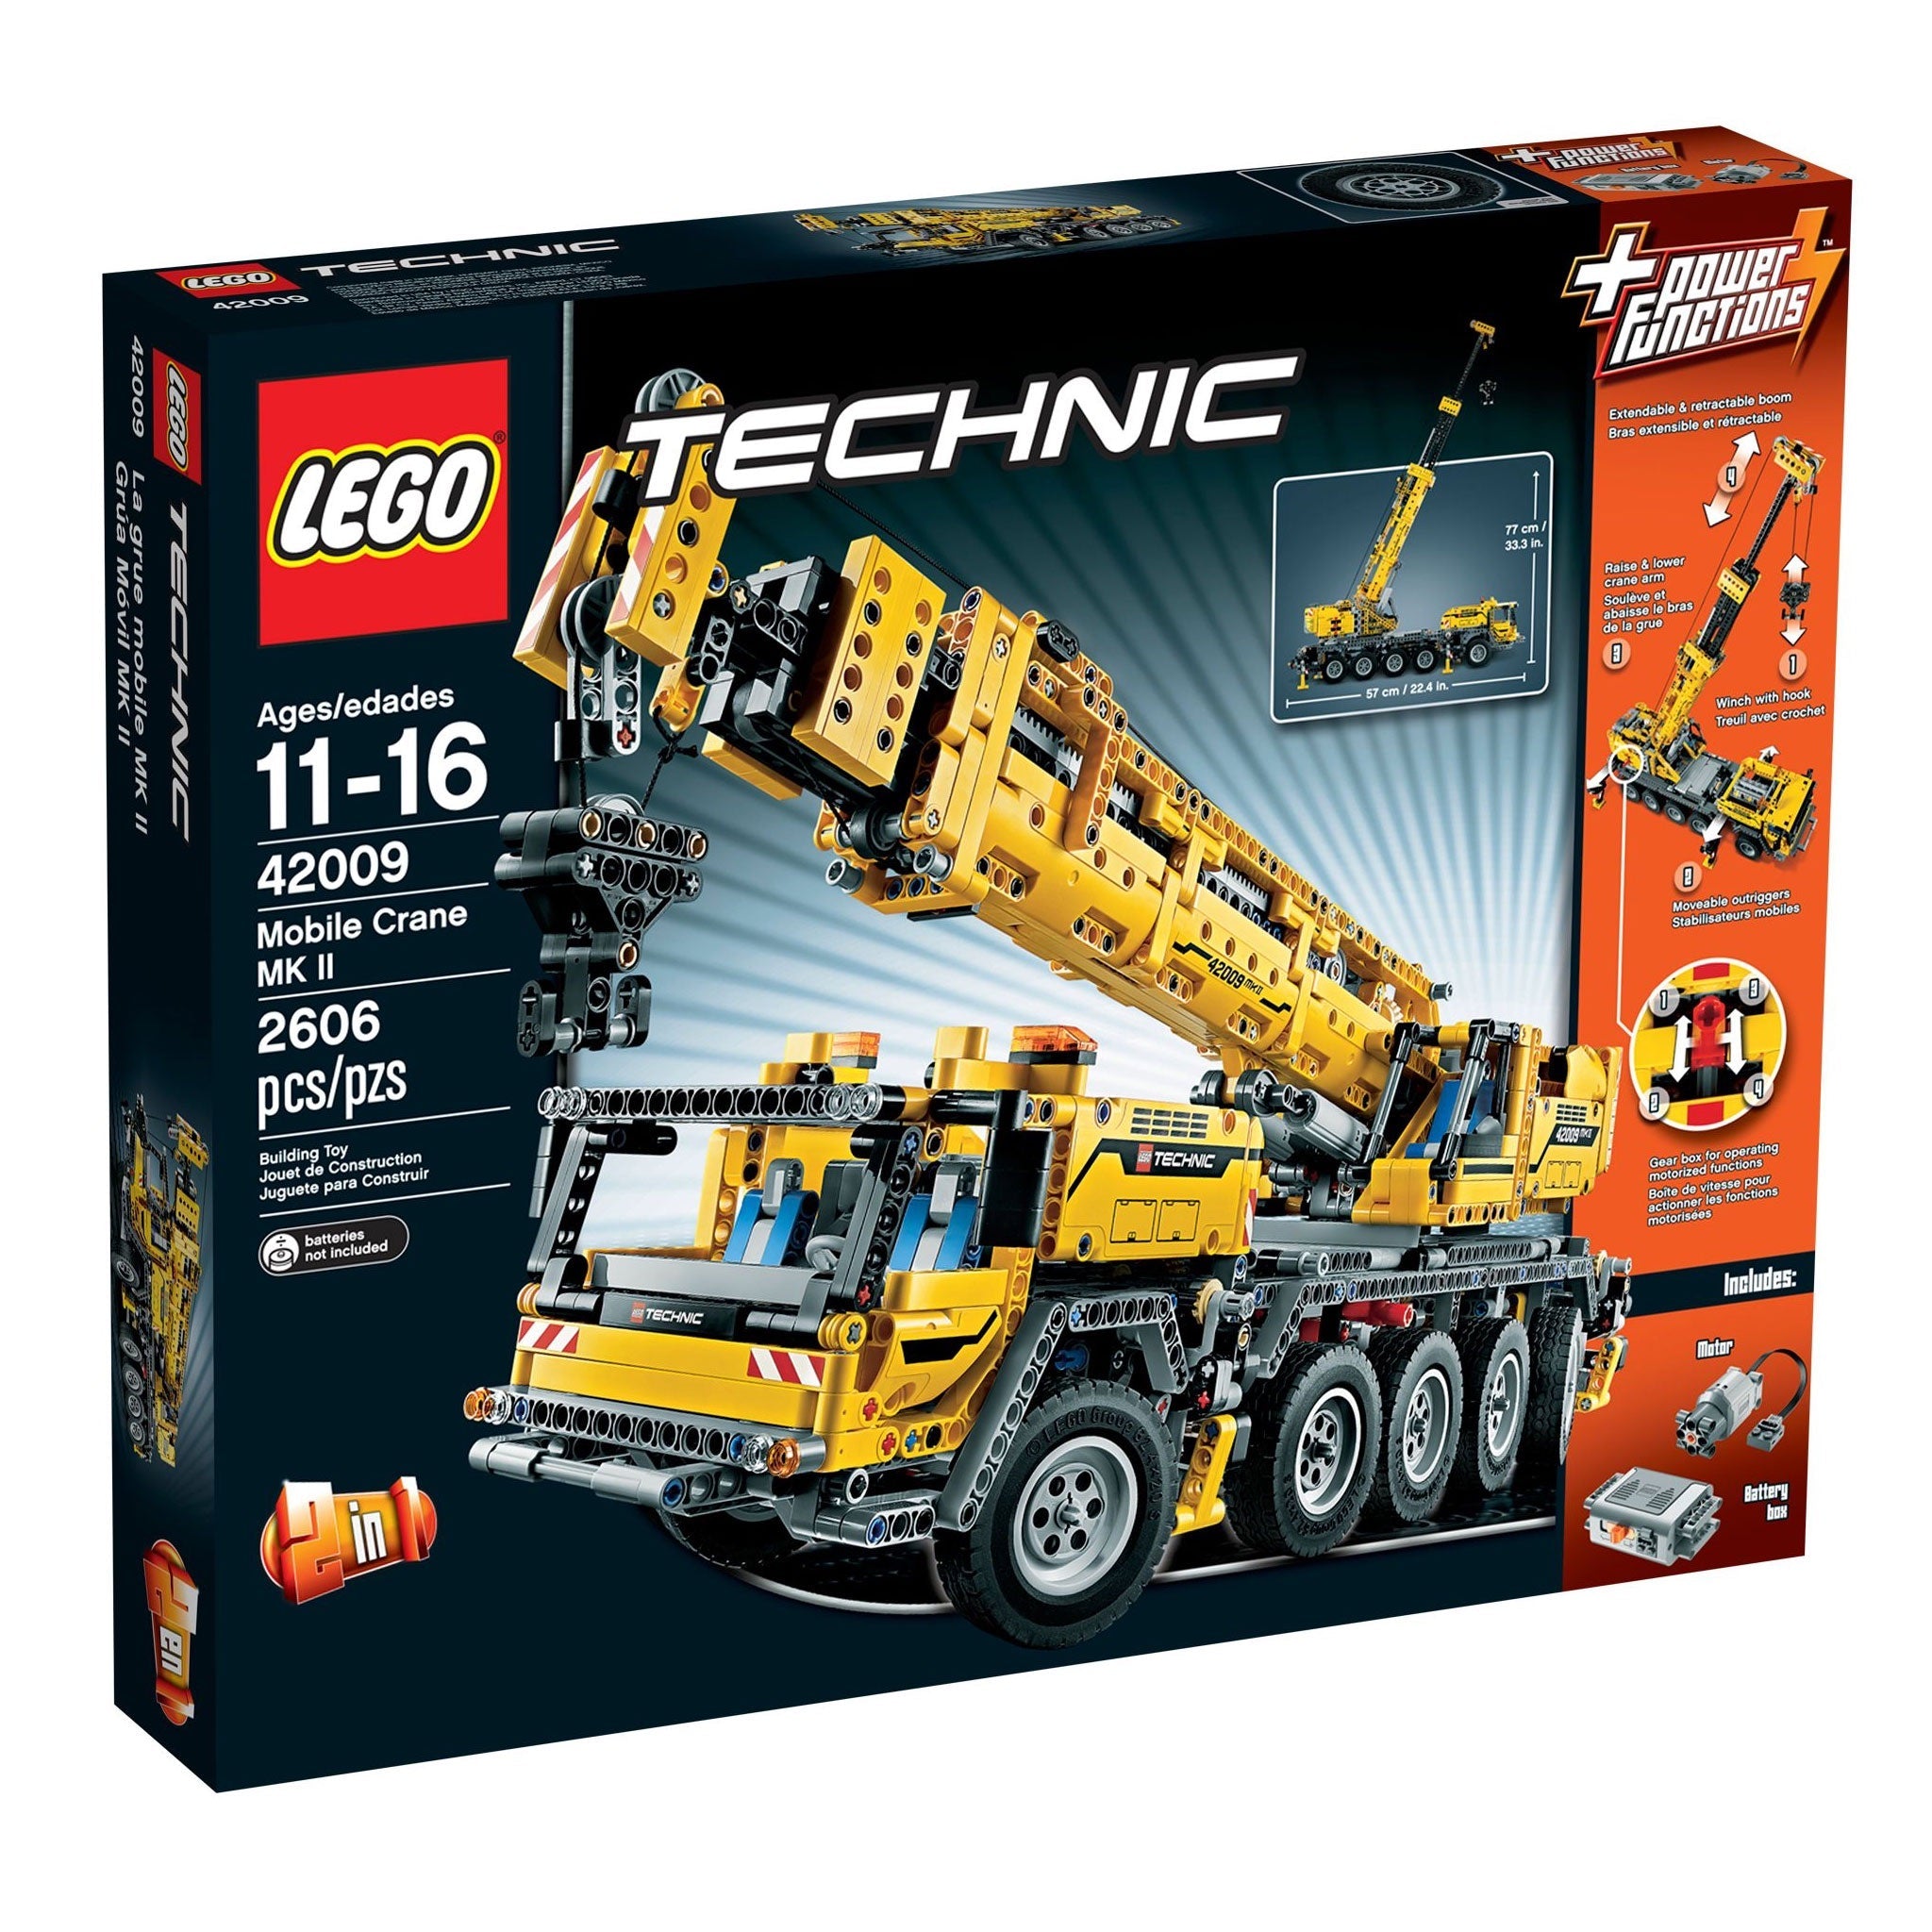 LEGO Technic Mobiler Schwerlastkran (42009) - im GOLDSTIEN.SHOP verfügbar mit Gratisversand ab Schweizer Lager! (5702014975606)